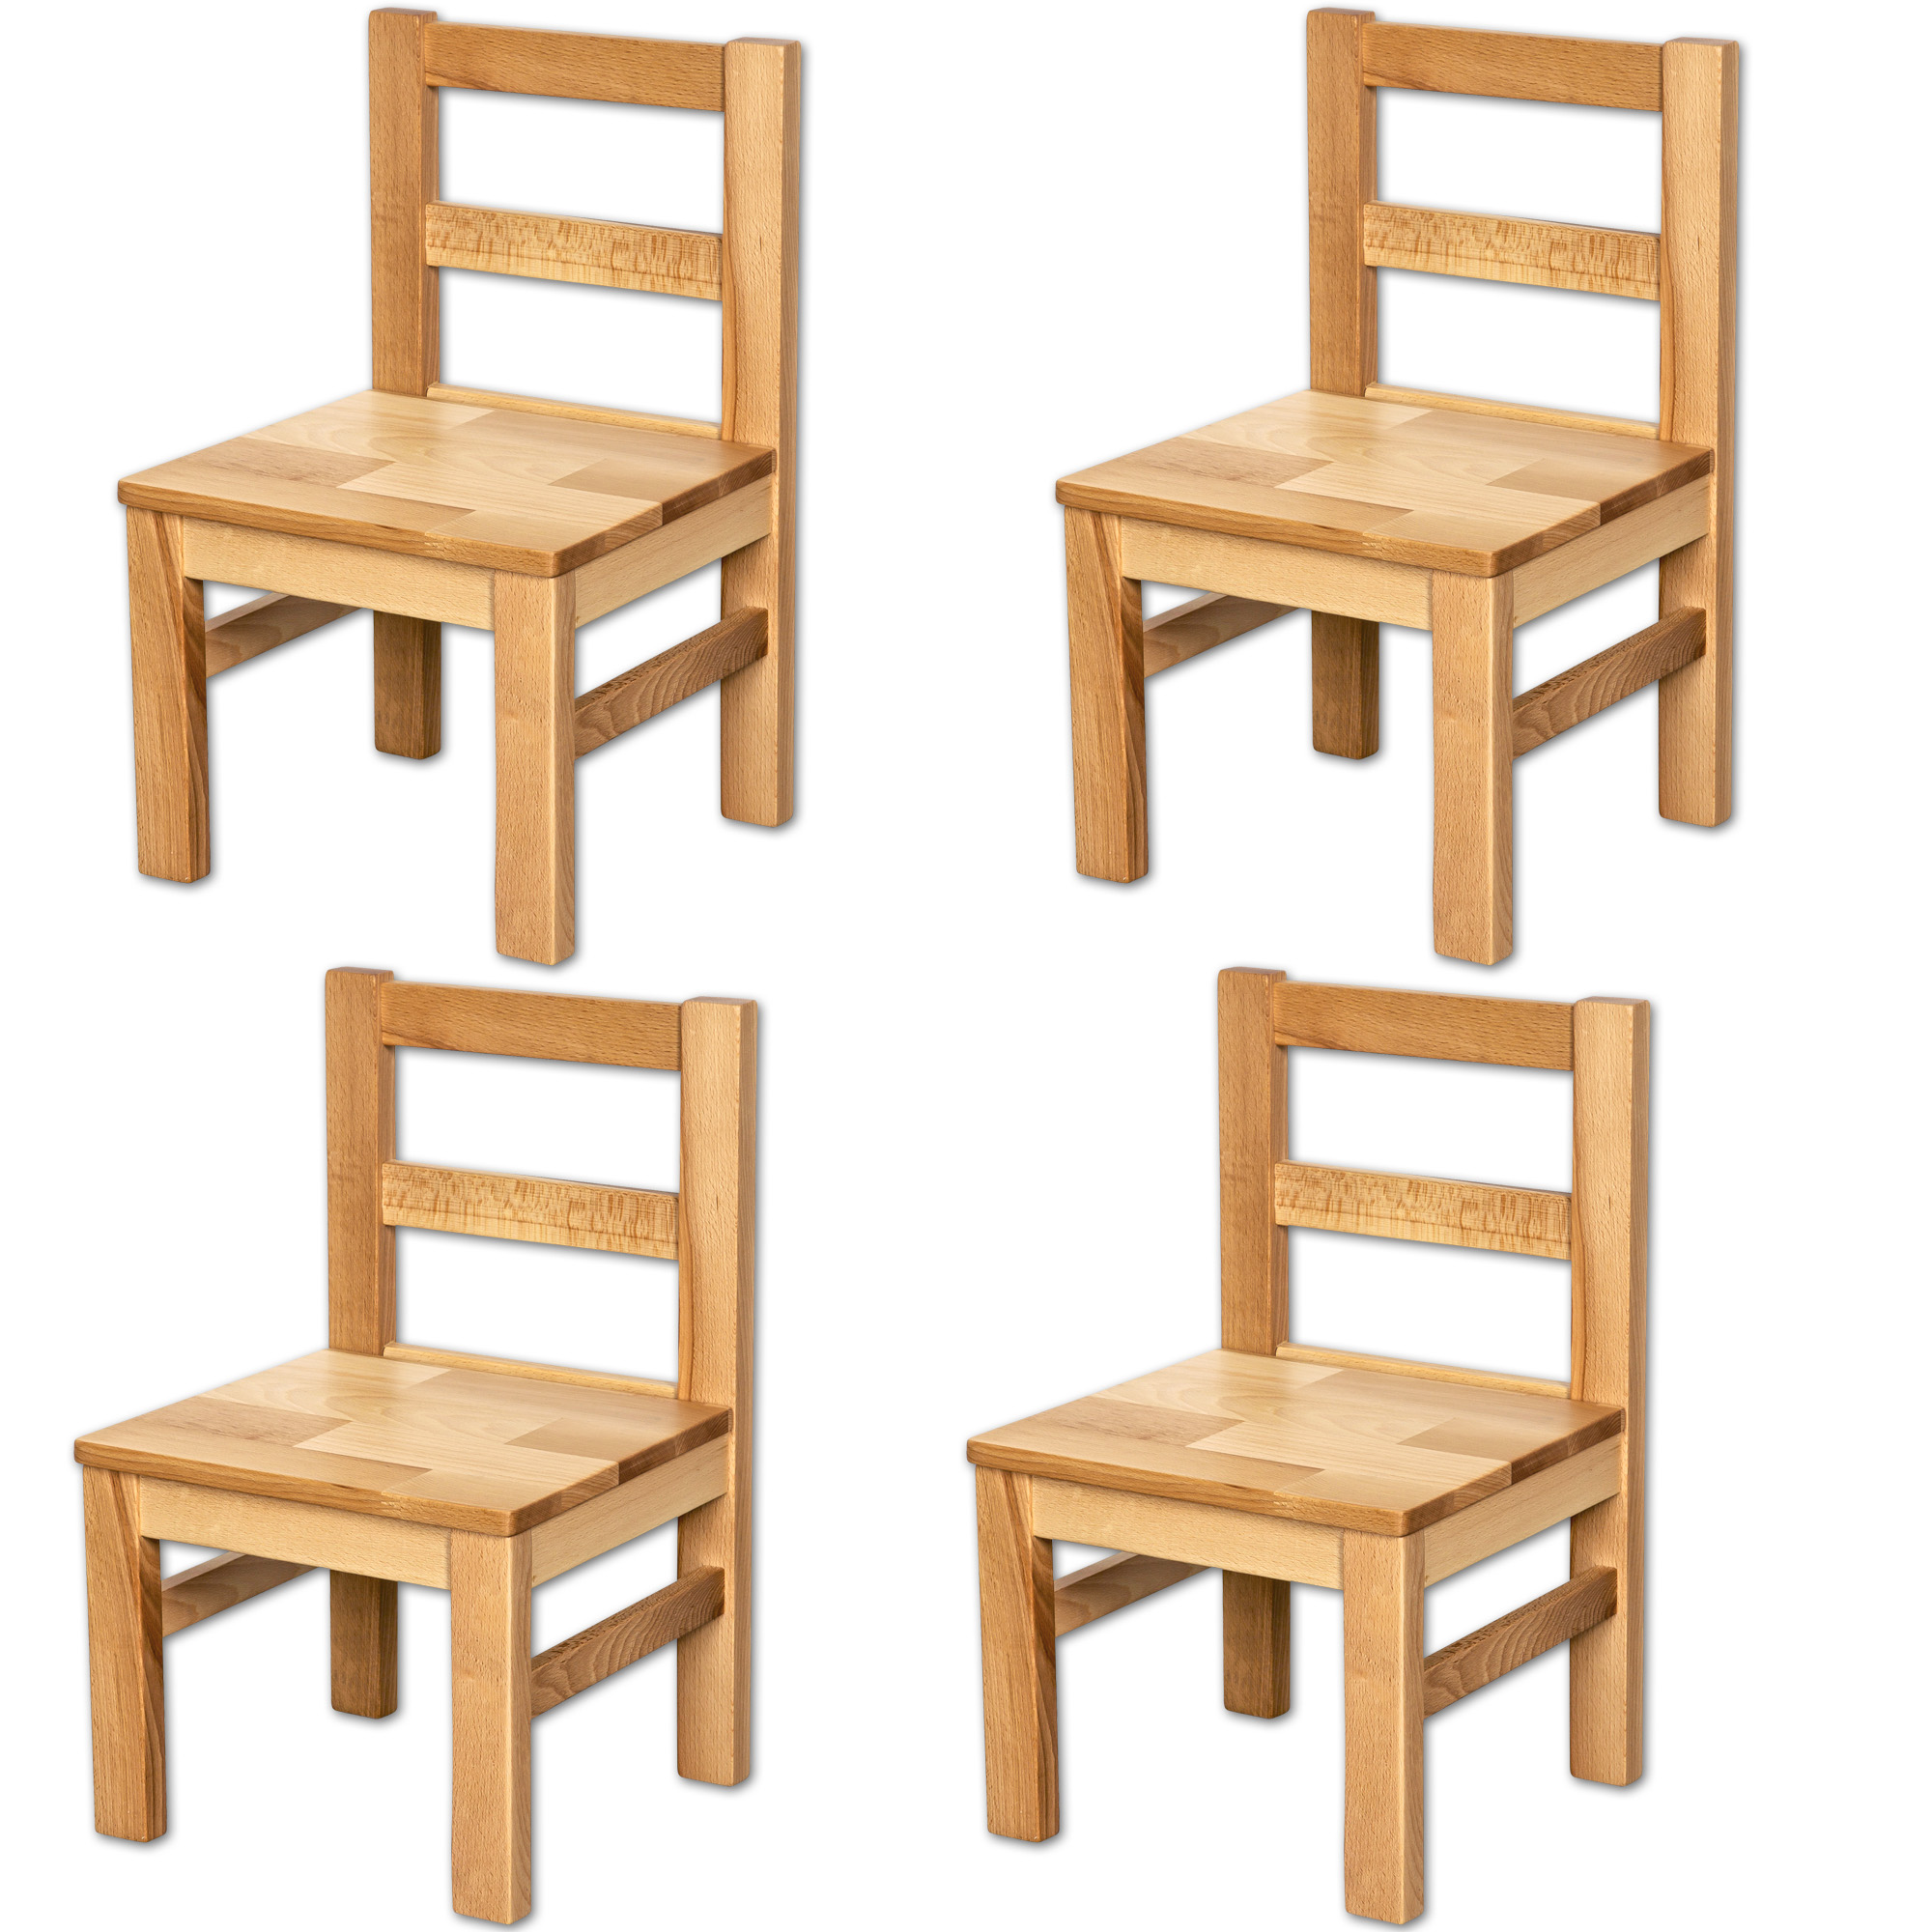 Bubema Kindersitzgruppe – aus Massivholz, als Stuhl, Tisch oder als Set, natur geölt oder weiß lackiert